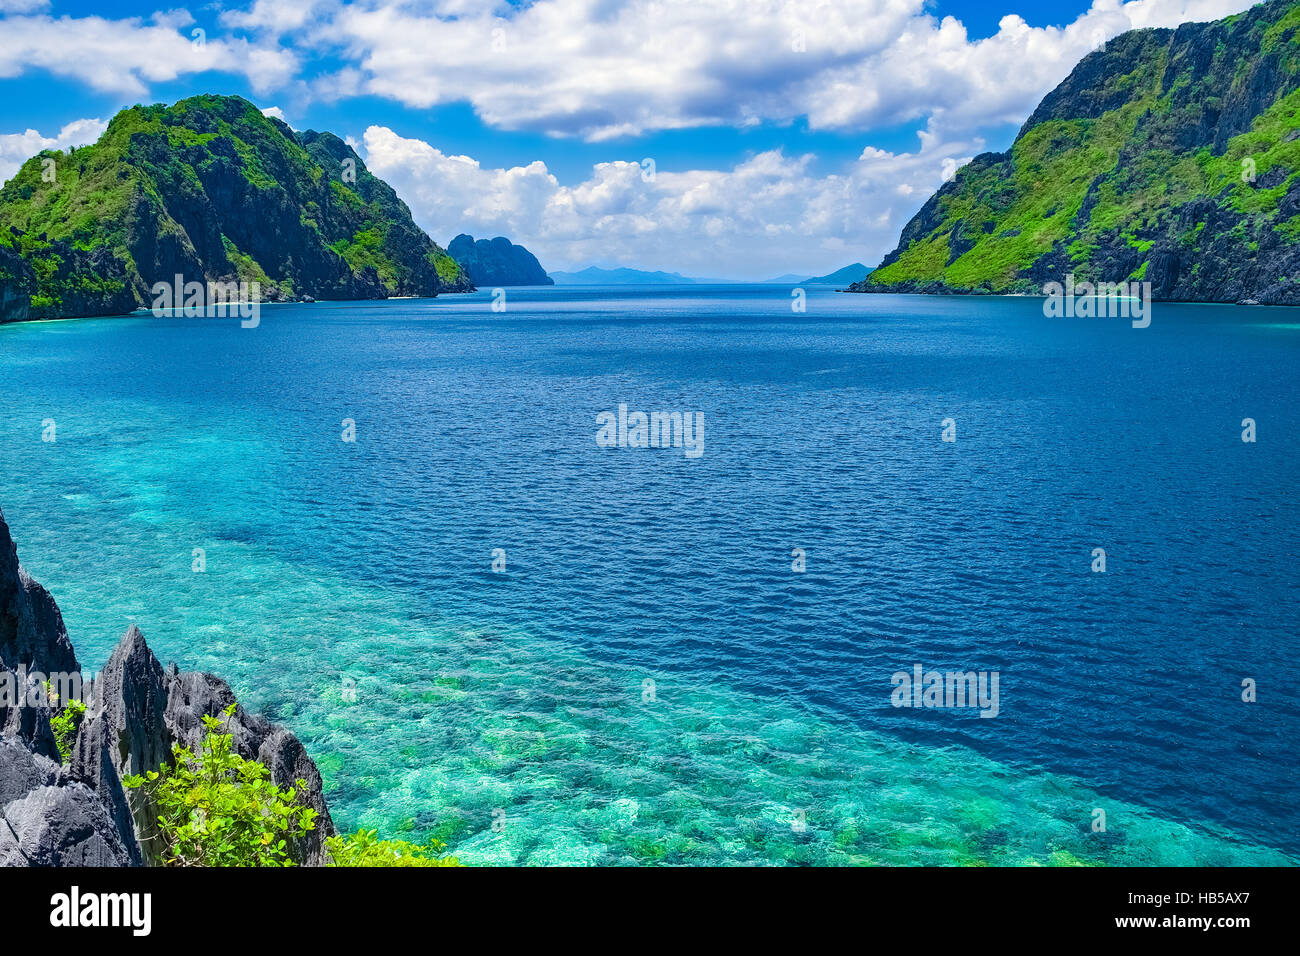 Schöne tropische Meeresbucht. Malerische Landschaft mit Berg-Inseln und blaue Lagune, El Nido, Palawan, Philippinen Südost-Asien Stockfoto